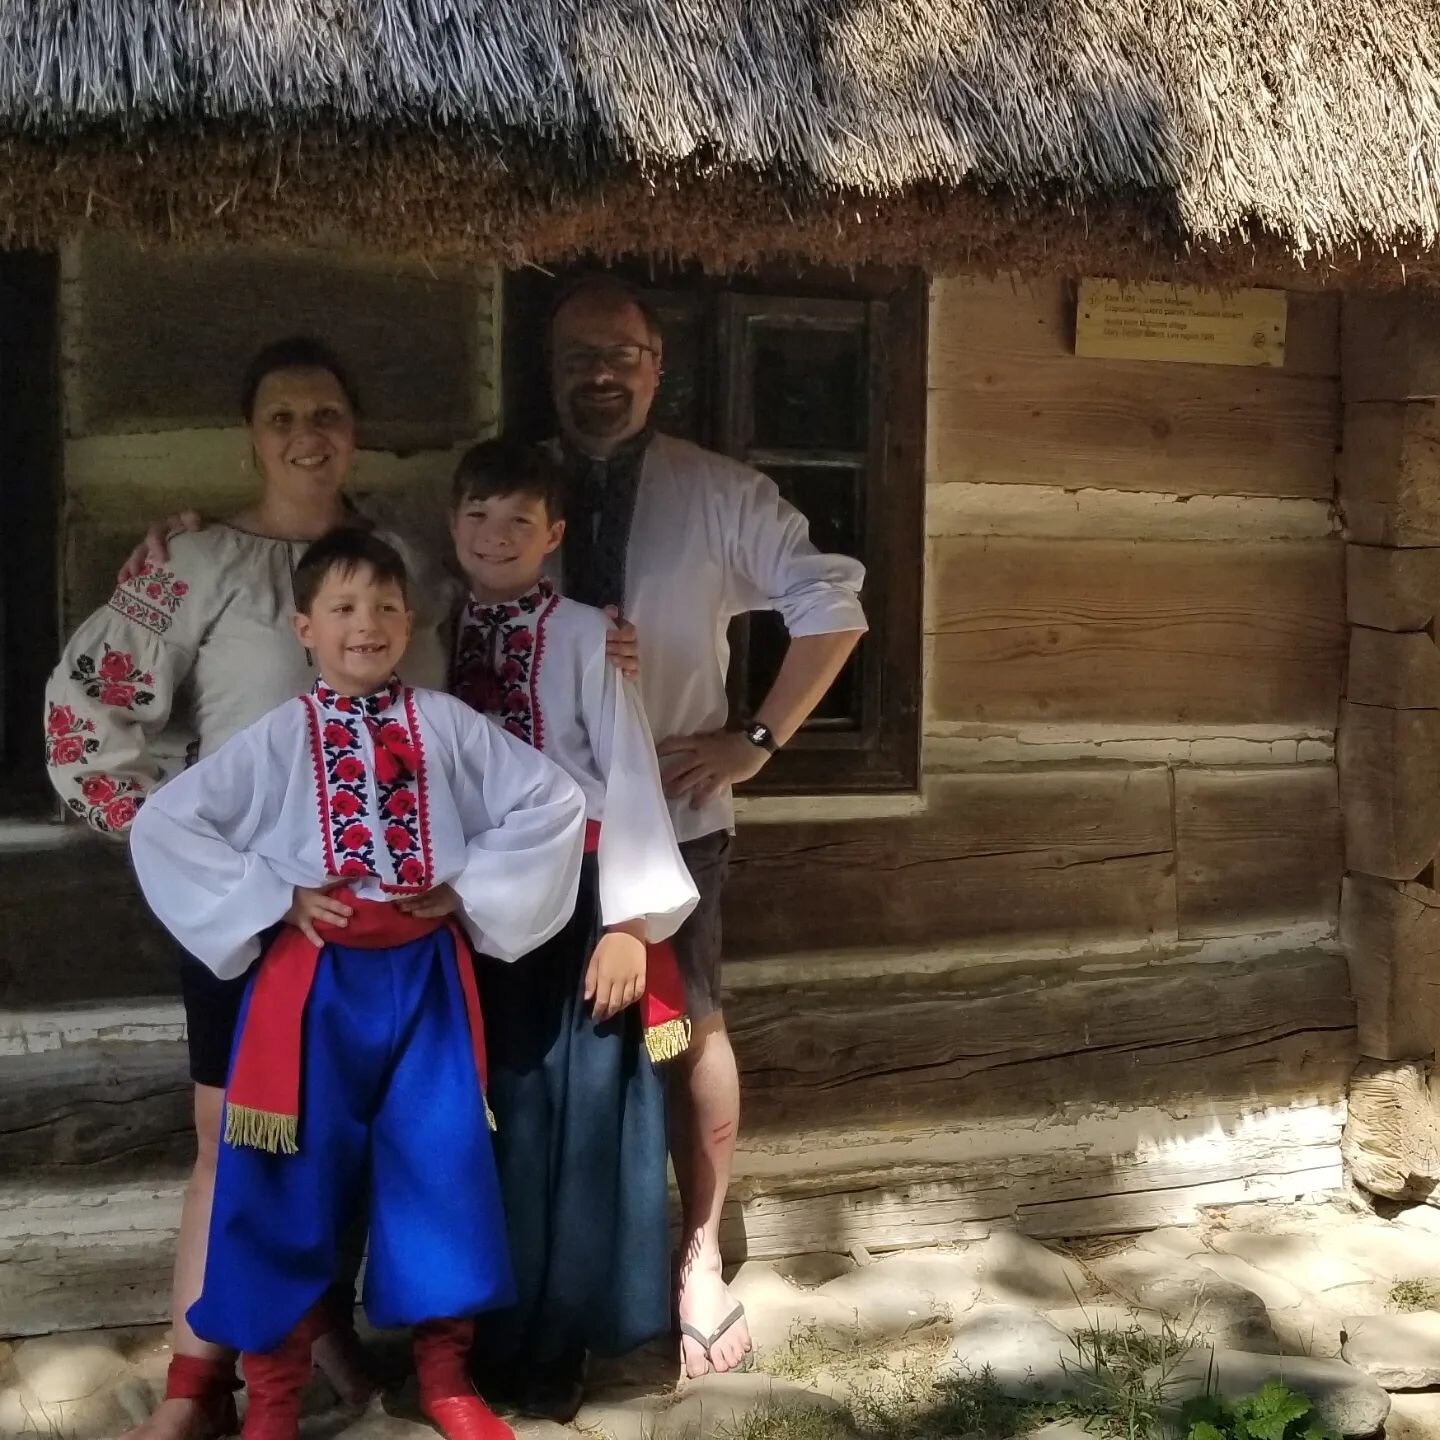 Happy Vyshyvanka Day from me and my village boys! 💙💛
📷 Lviv, 2019